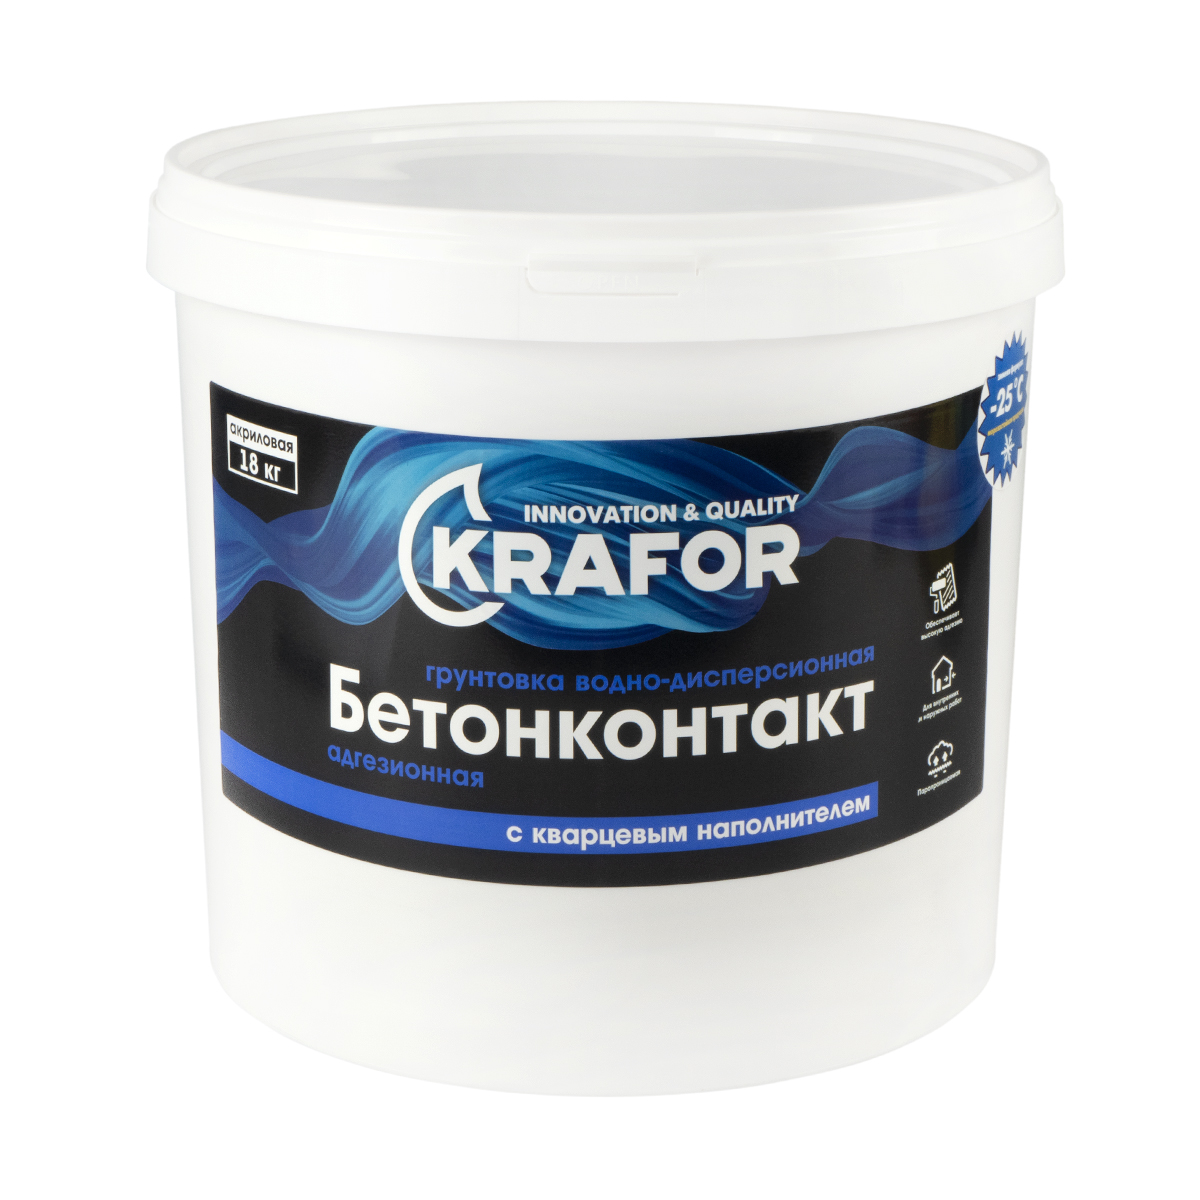 Бетон-контакт 18 кг (1) "krafor"